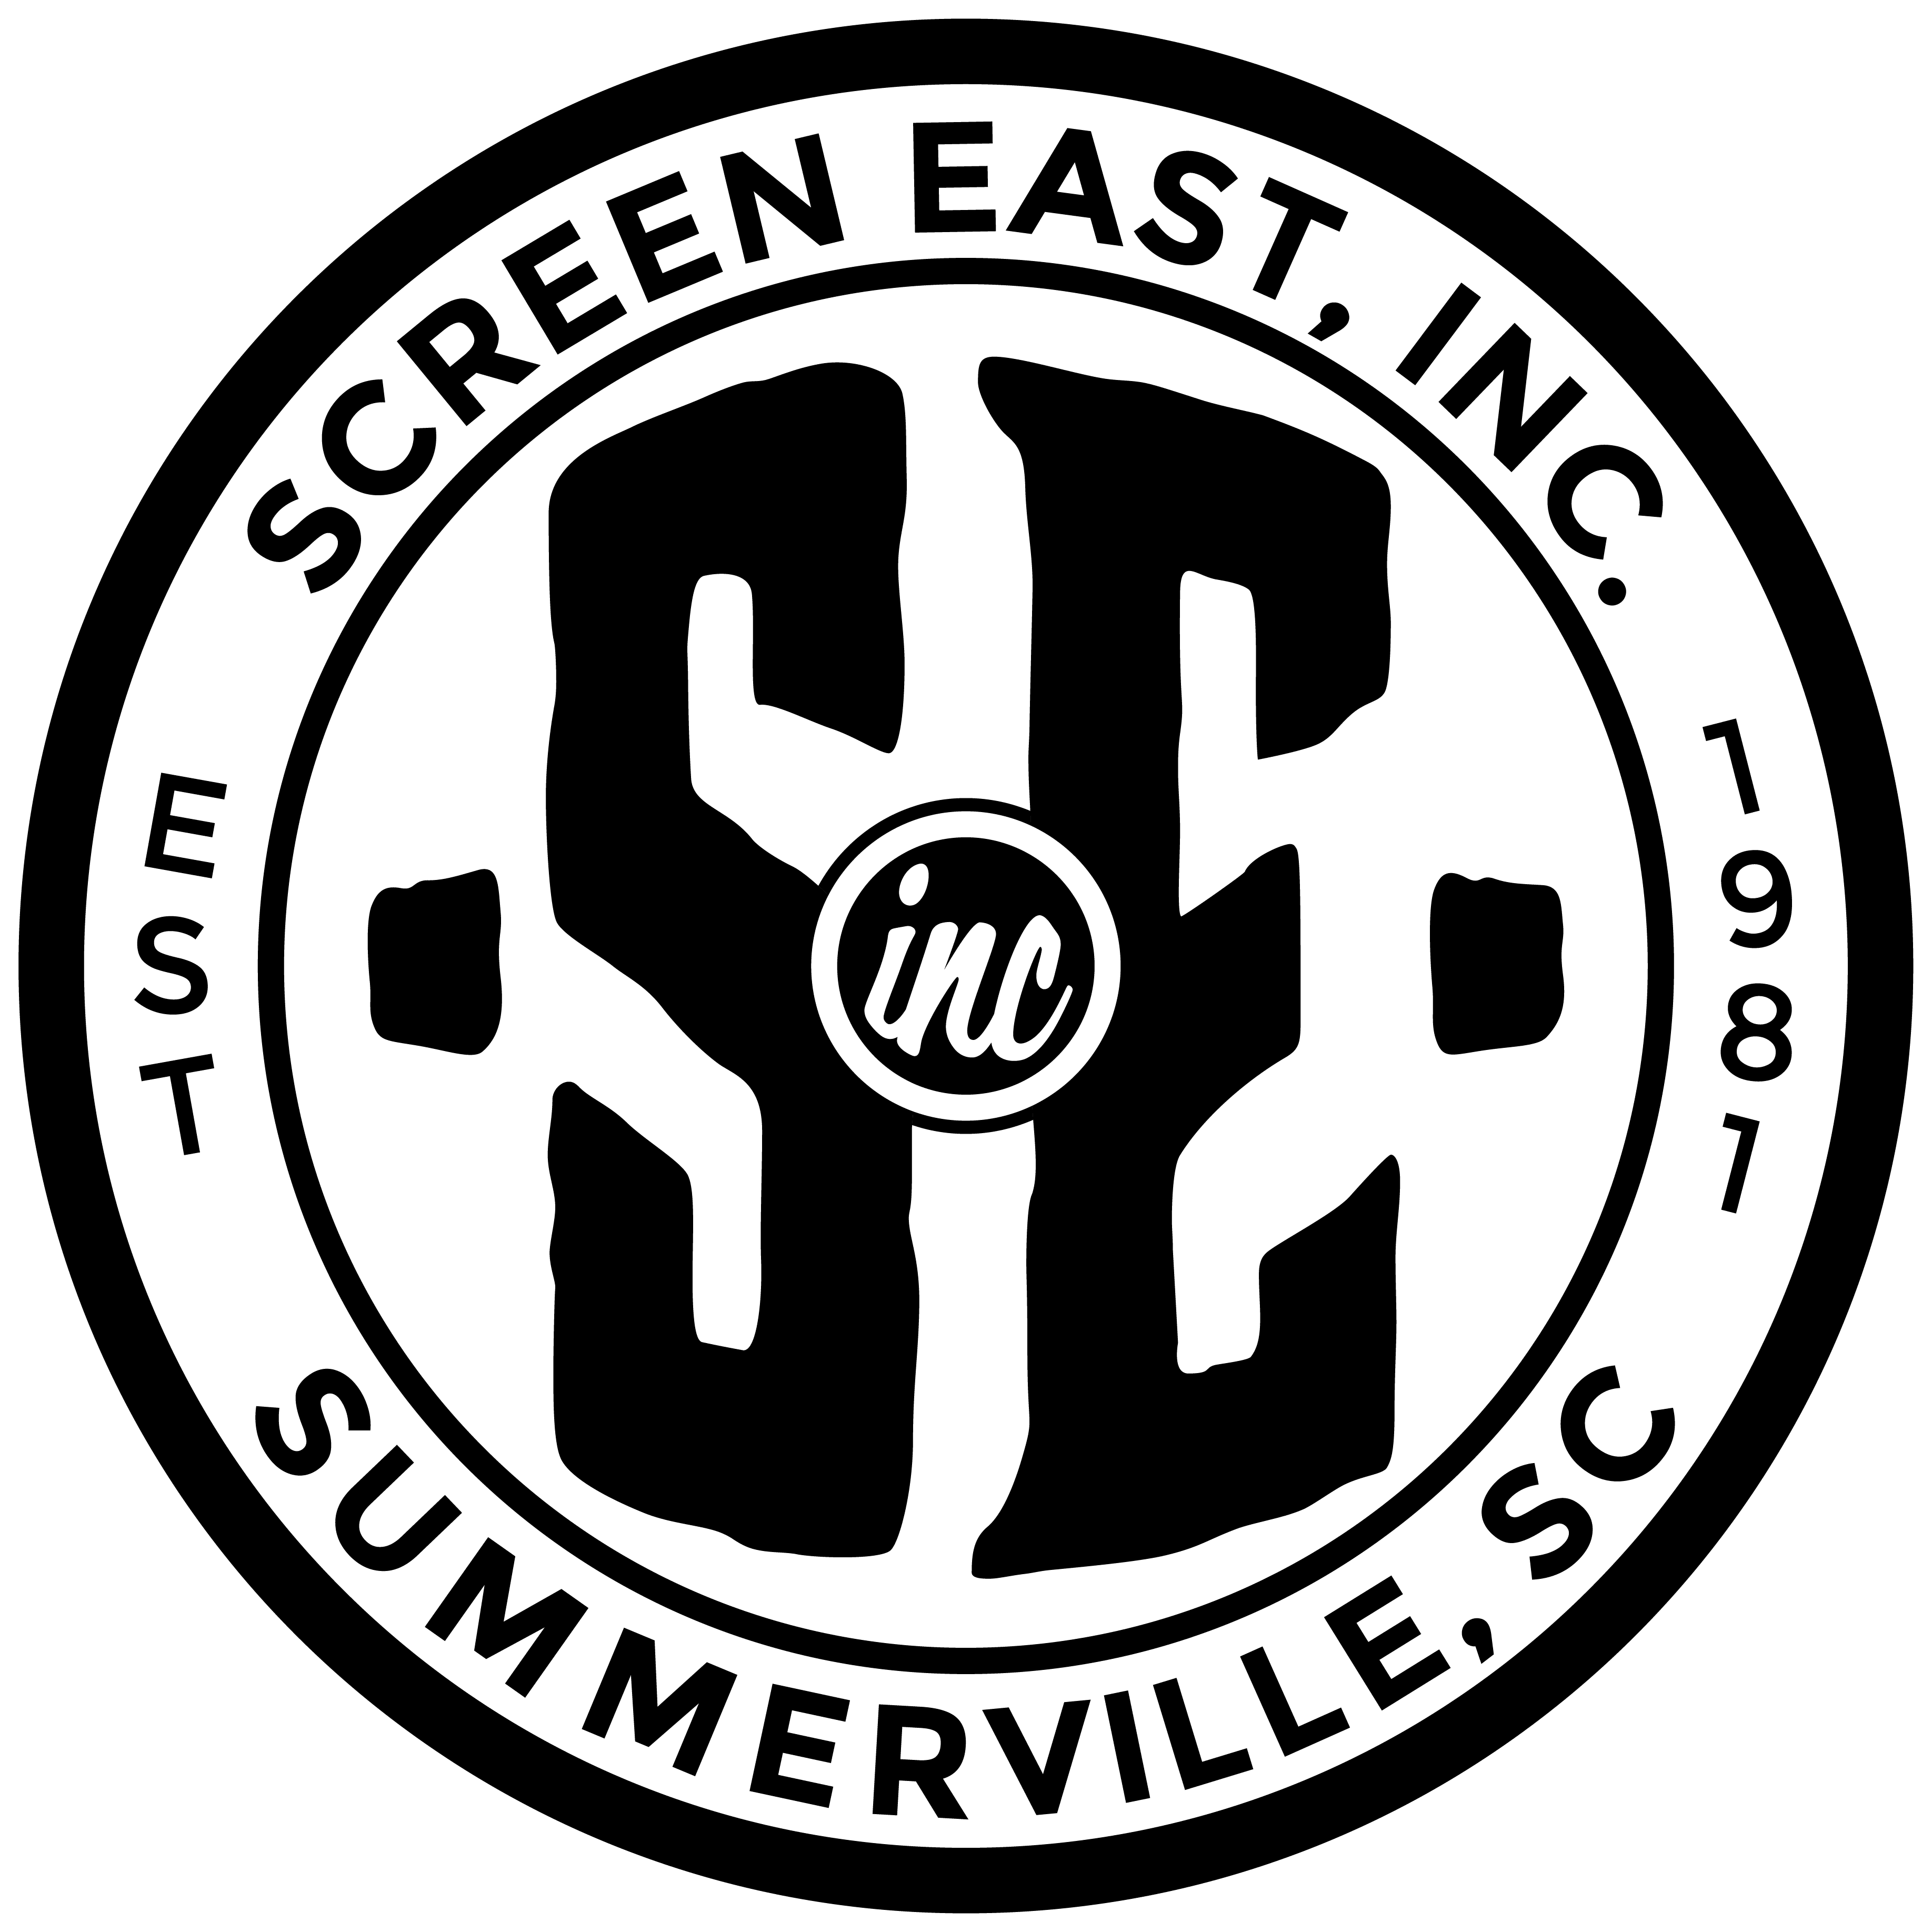 screen east logo-01(1)